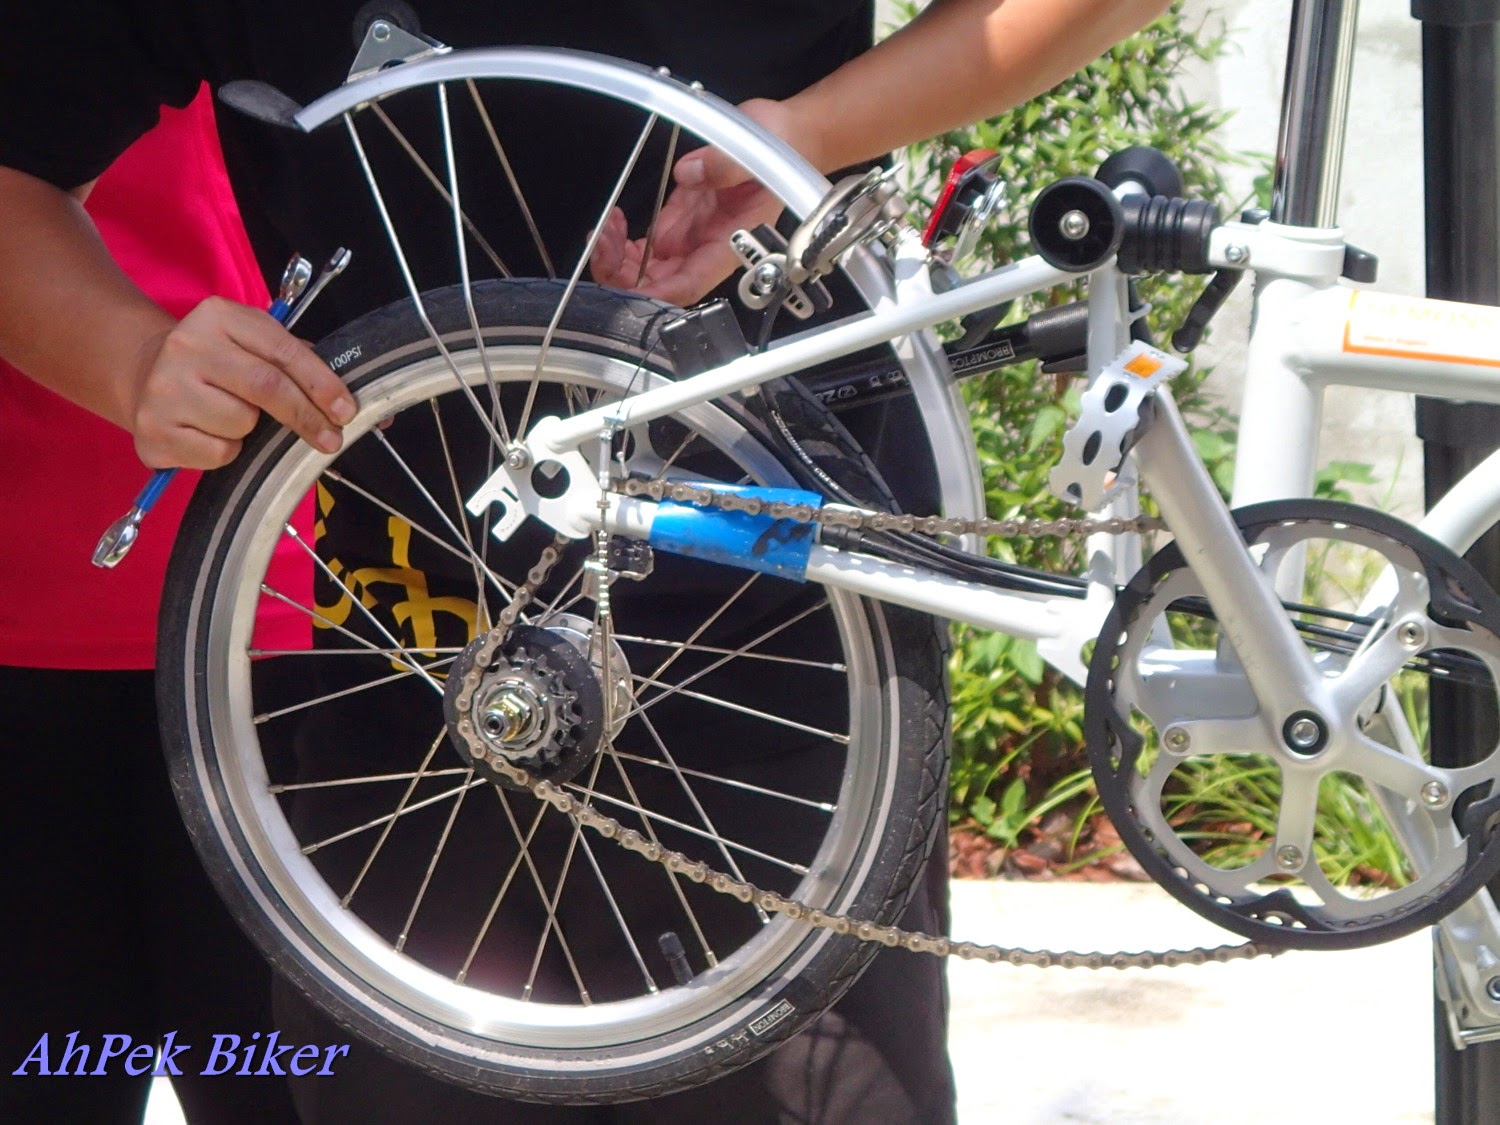 Поставить заднее колесо на велосипед со скоростями. Крепление заднего колеса велосипеда. Заднее колесо велосипеда. Колесо скоростного велосипеда. Скоростной велосипед заднее колесо на велосипеде.